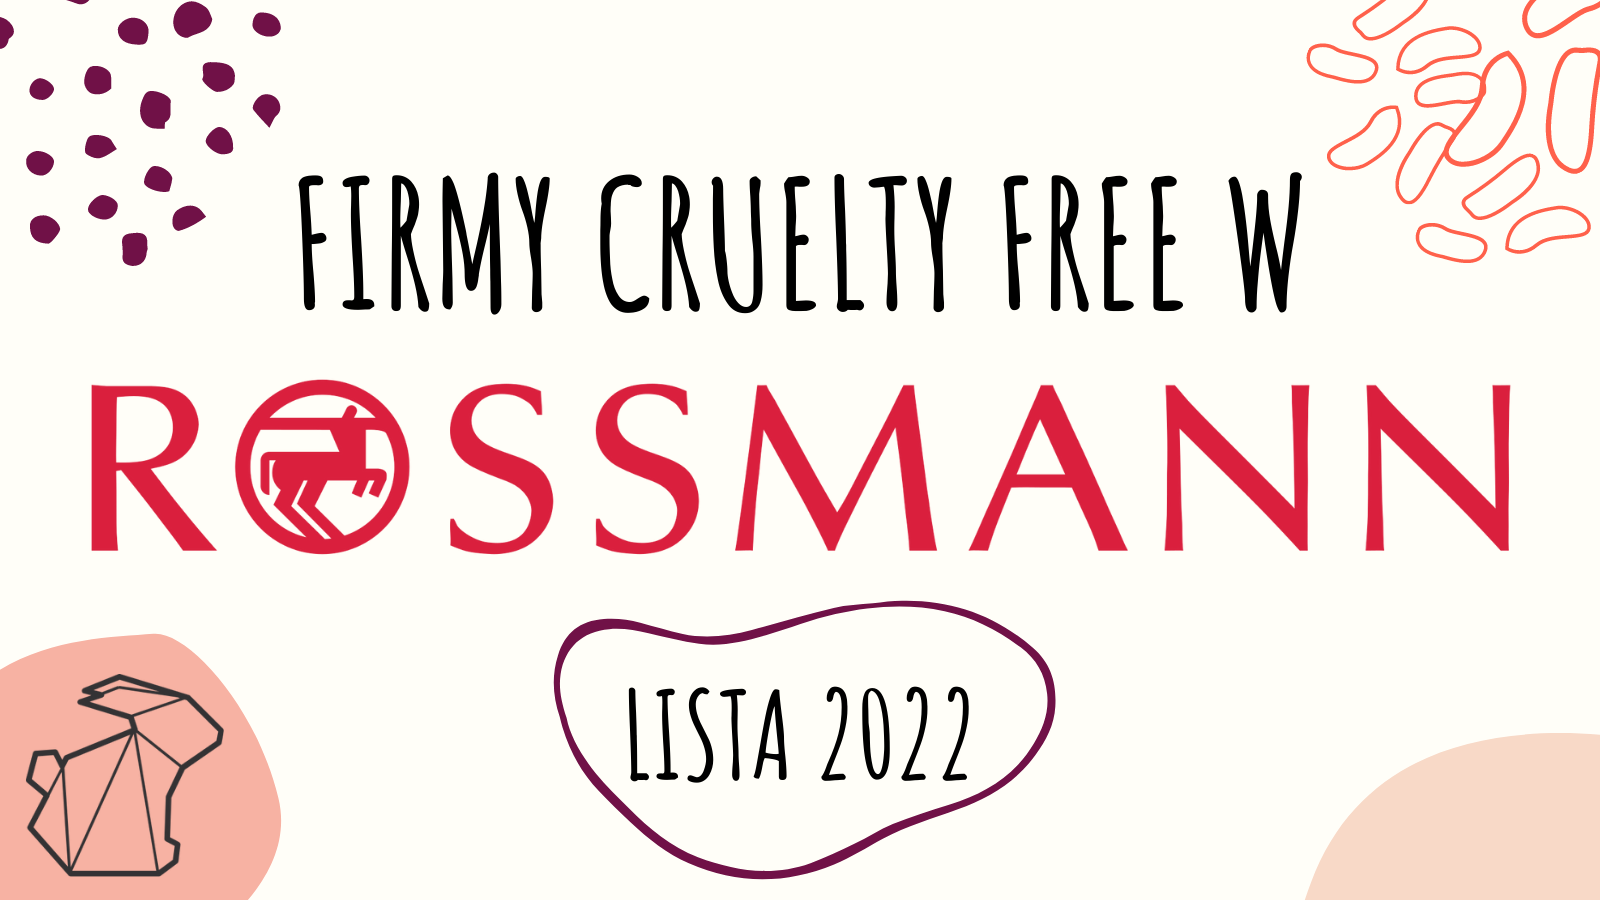 ROSSMANN - LISTA FIRM CRUELTY FREE 2022